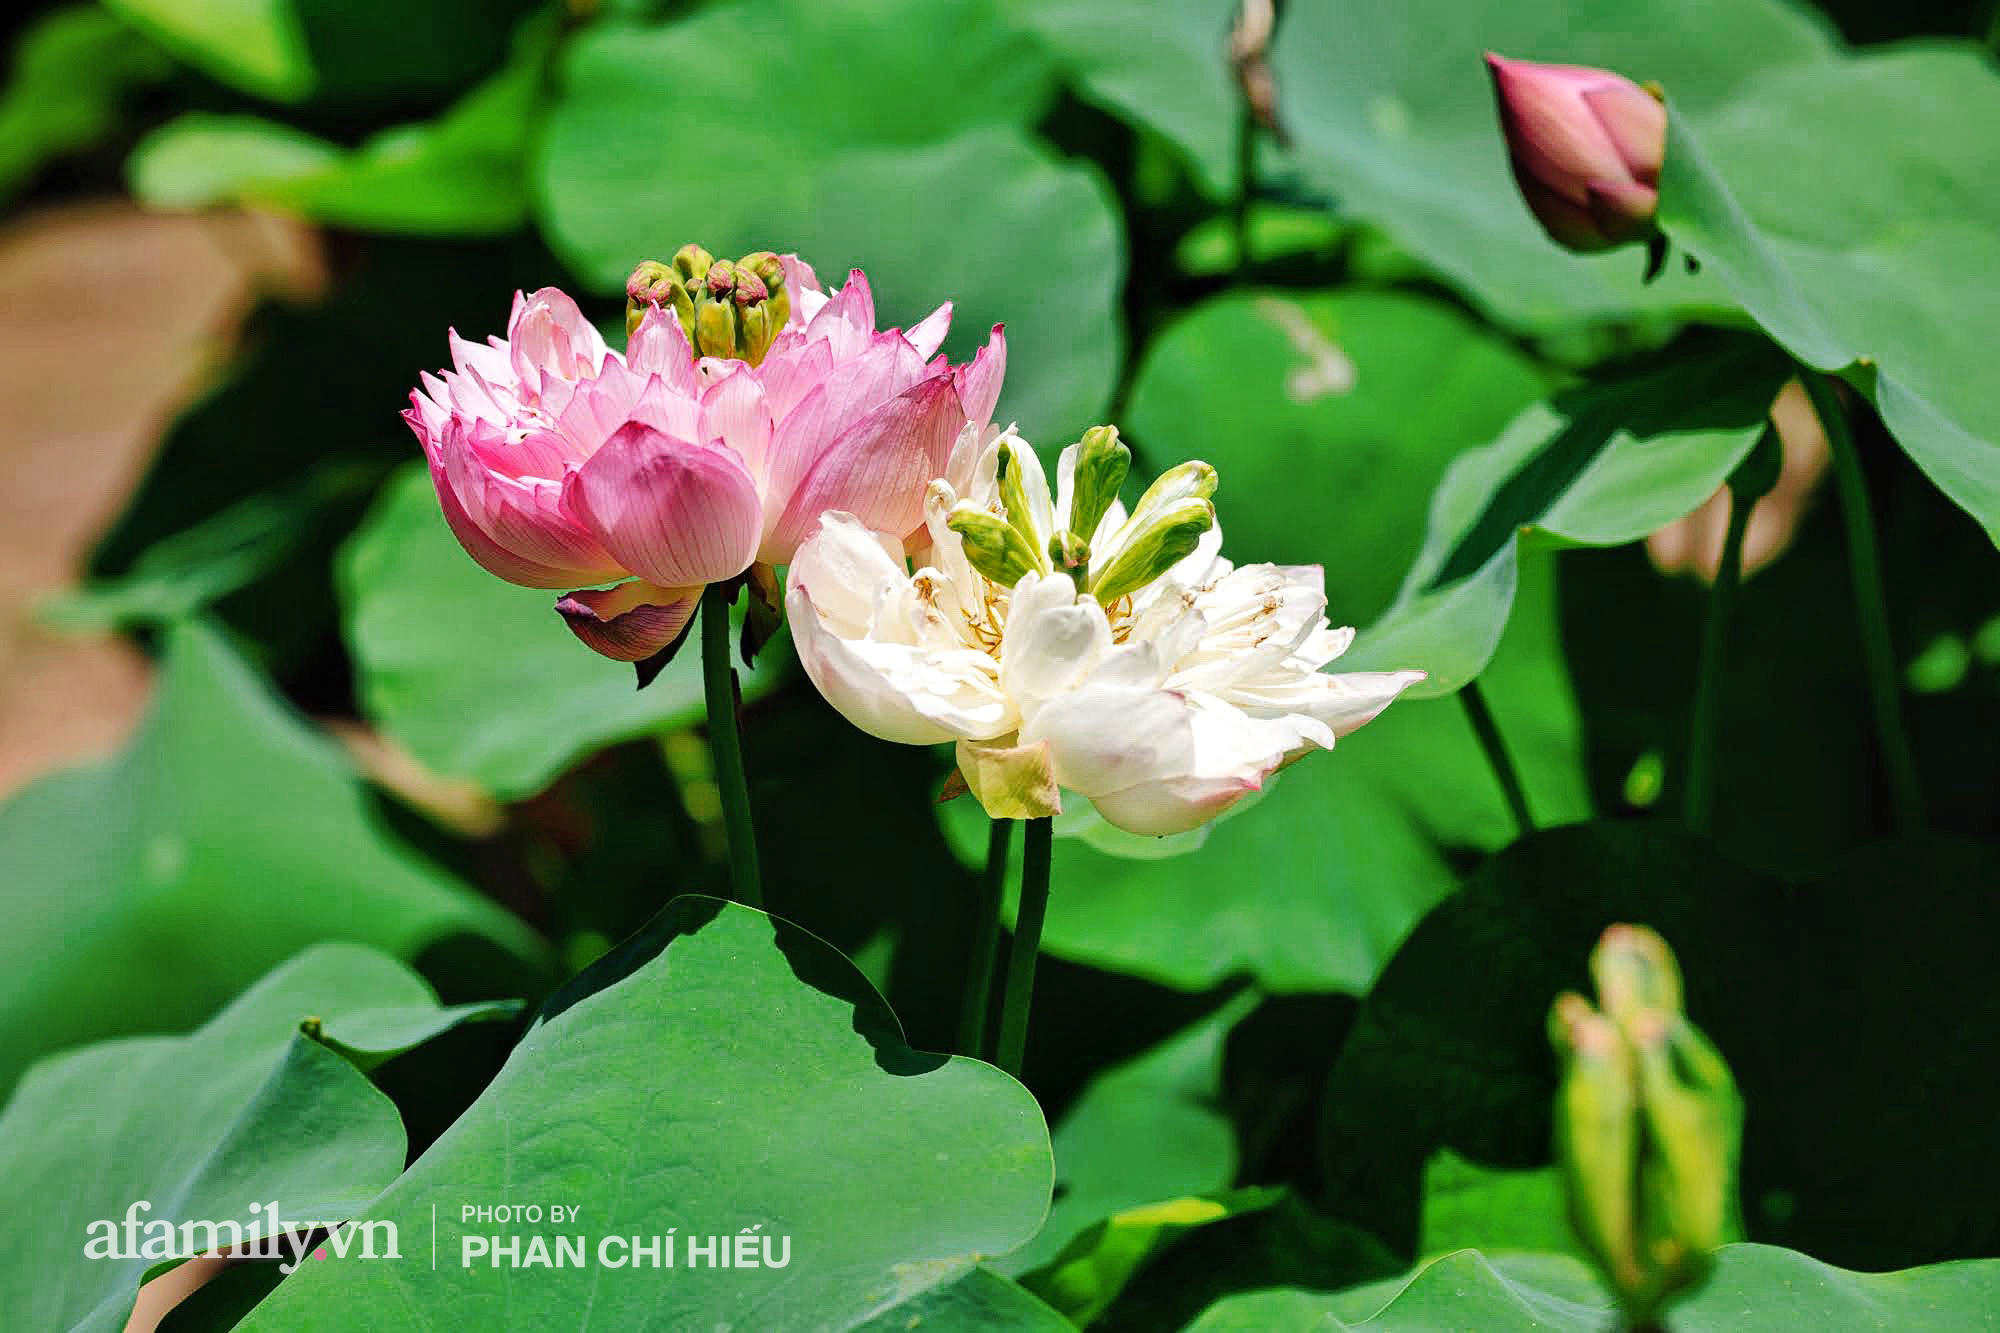 Độc đáo với thú chơi sen cung đình Huế tại Hà Nội, nở hoa tuyệt đẹp giữa ngôi nhà cổ trăm năm tuổi khiến bao người mê mẩn - Ảnh 2.